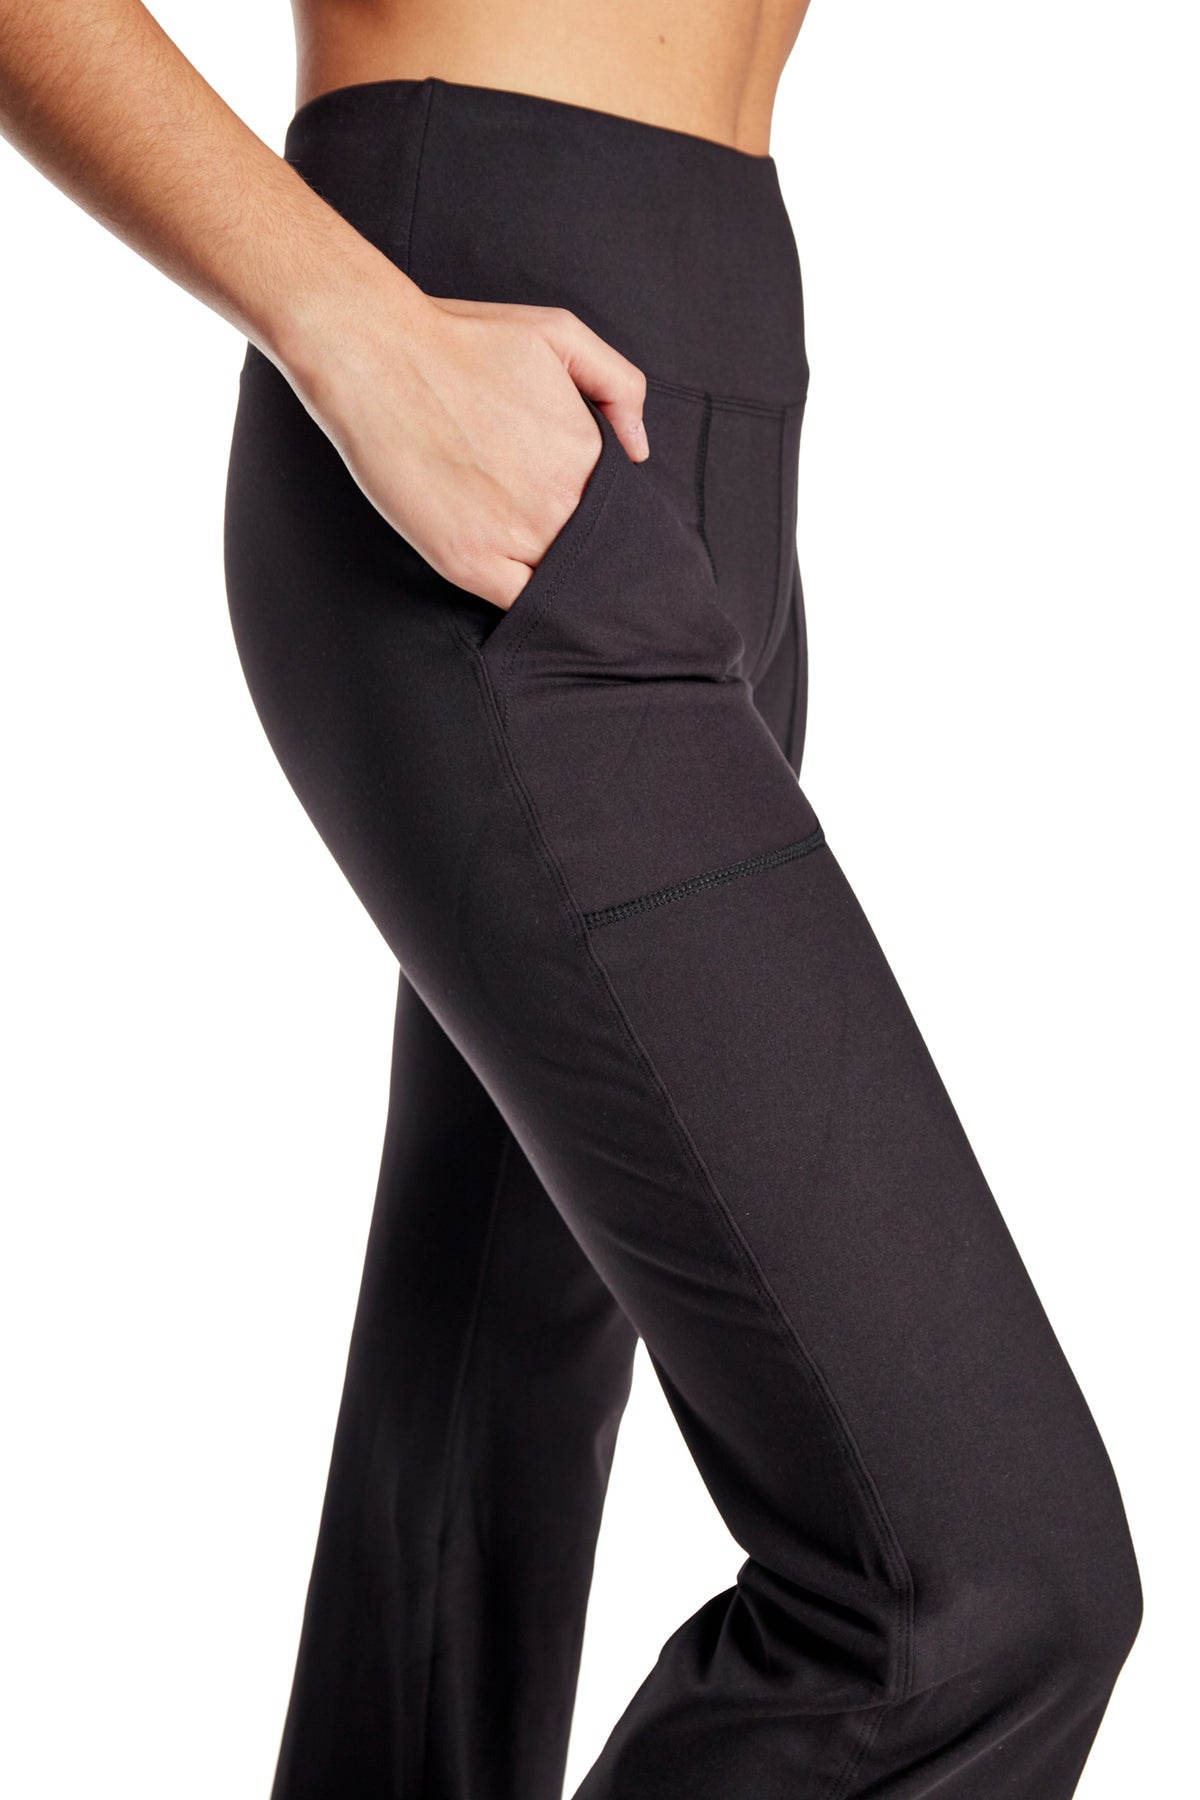 Womens High-Waisted Leggings Bamboo Fiber Very Soft Full-length Yoga Pants  FS919